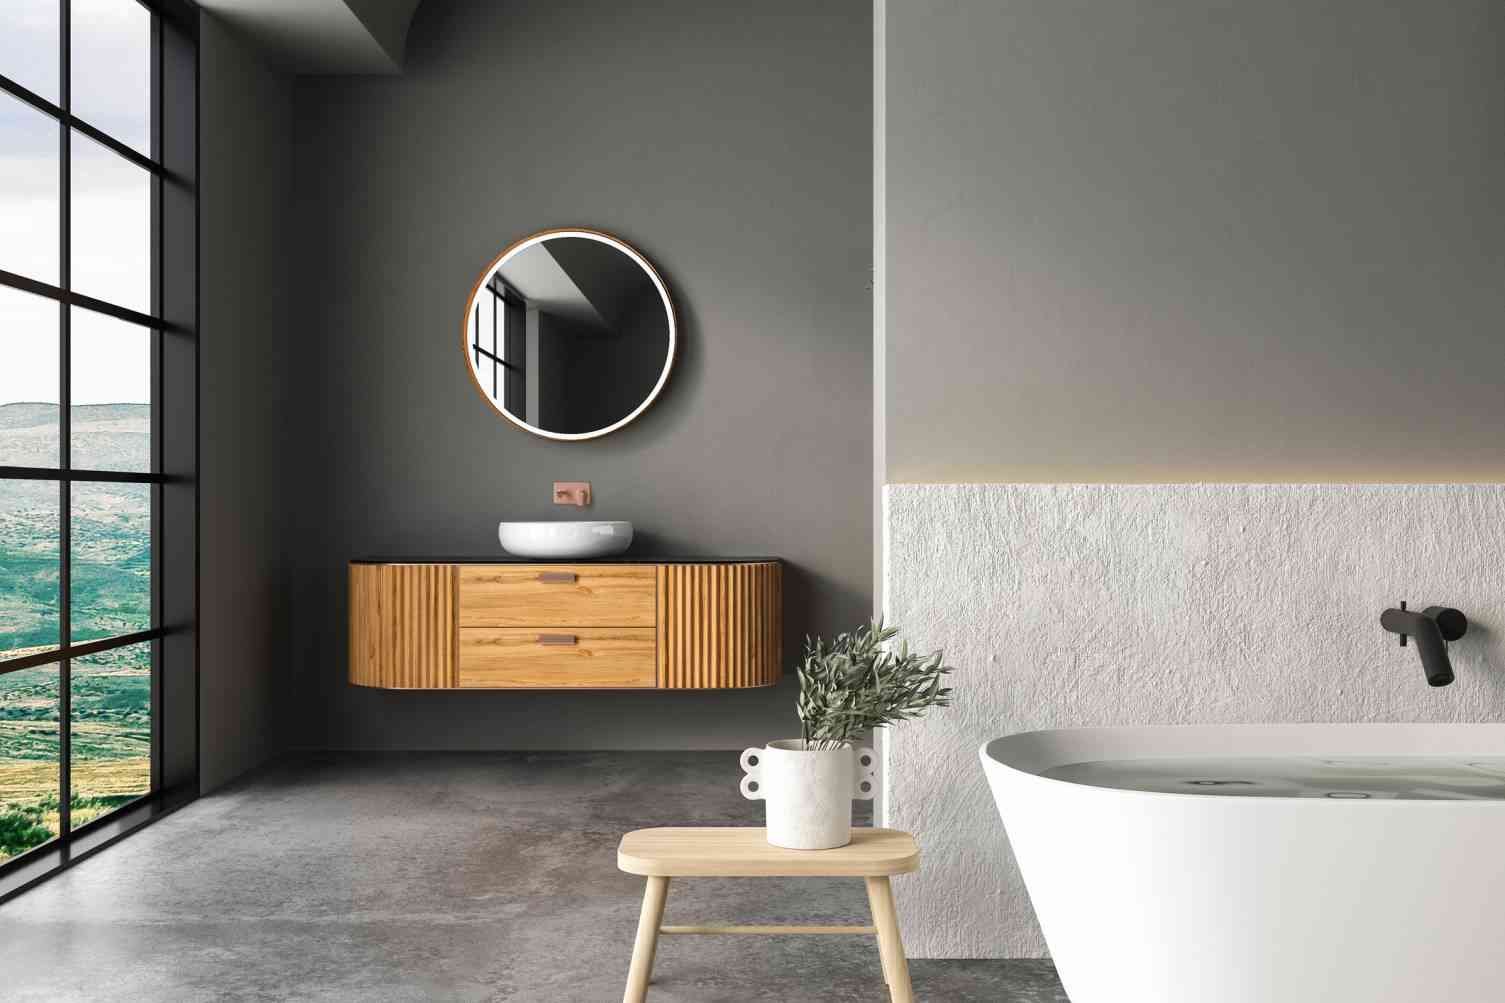 intérieur moderne design mobilier meuble mur salon salle de bains matériau décoratif lumière